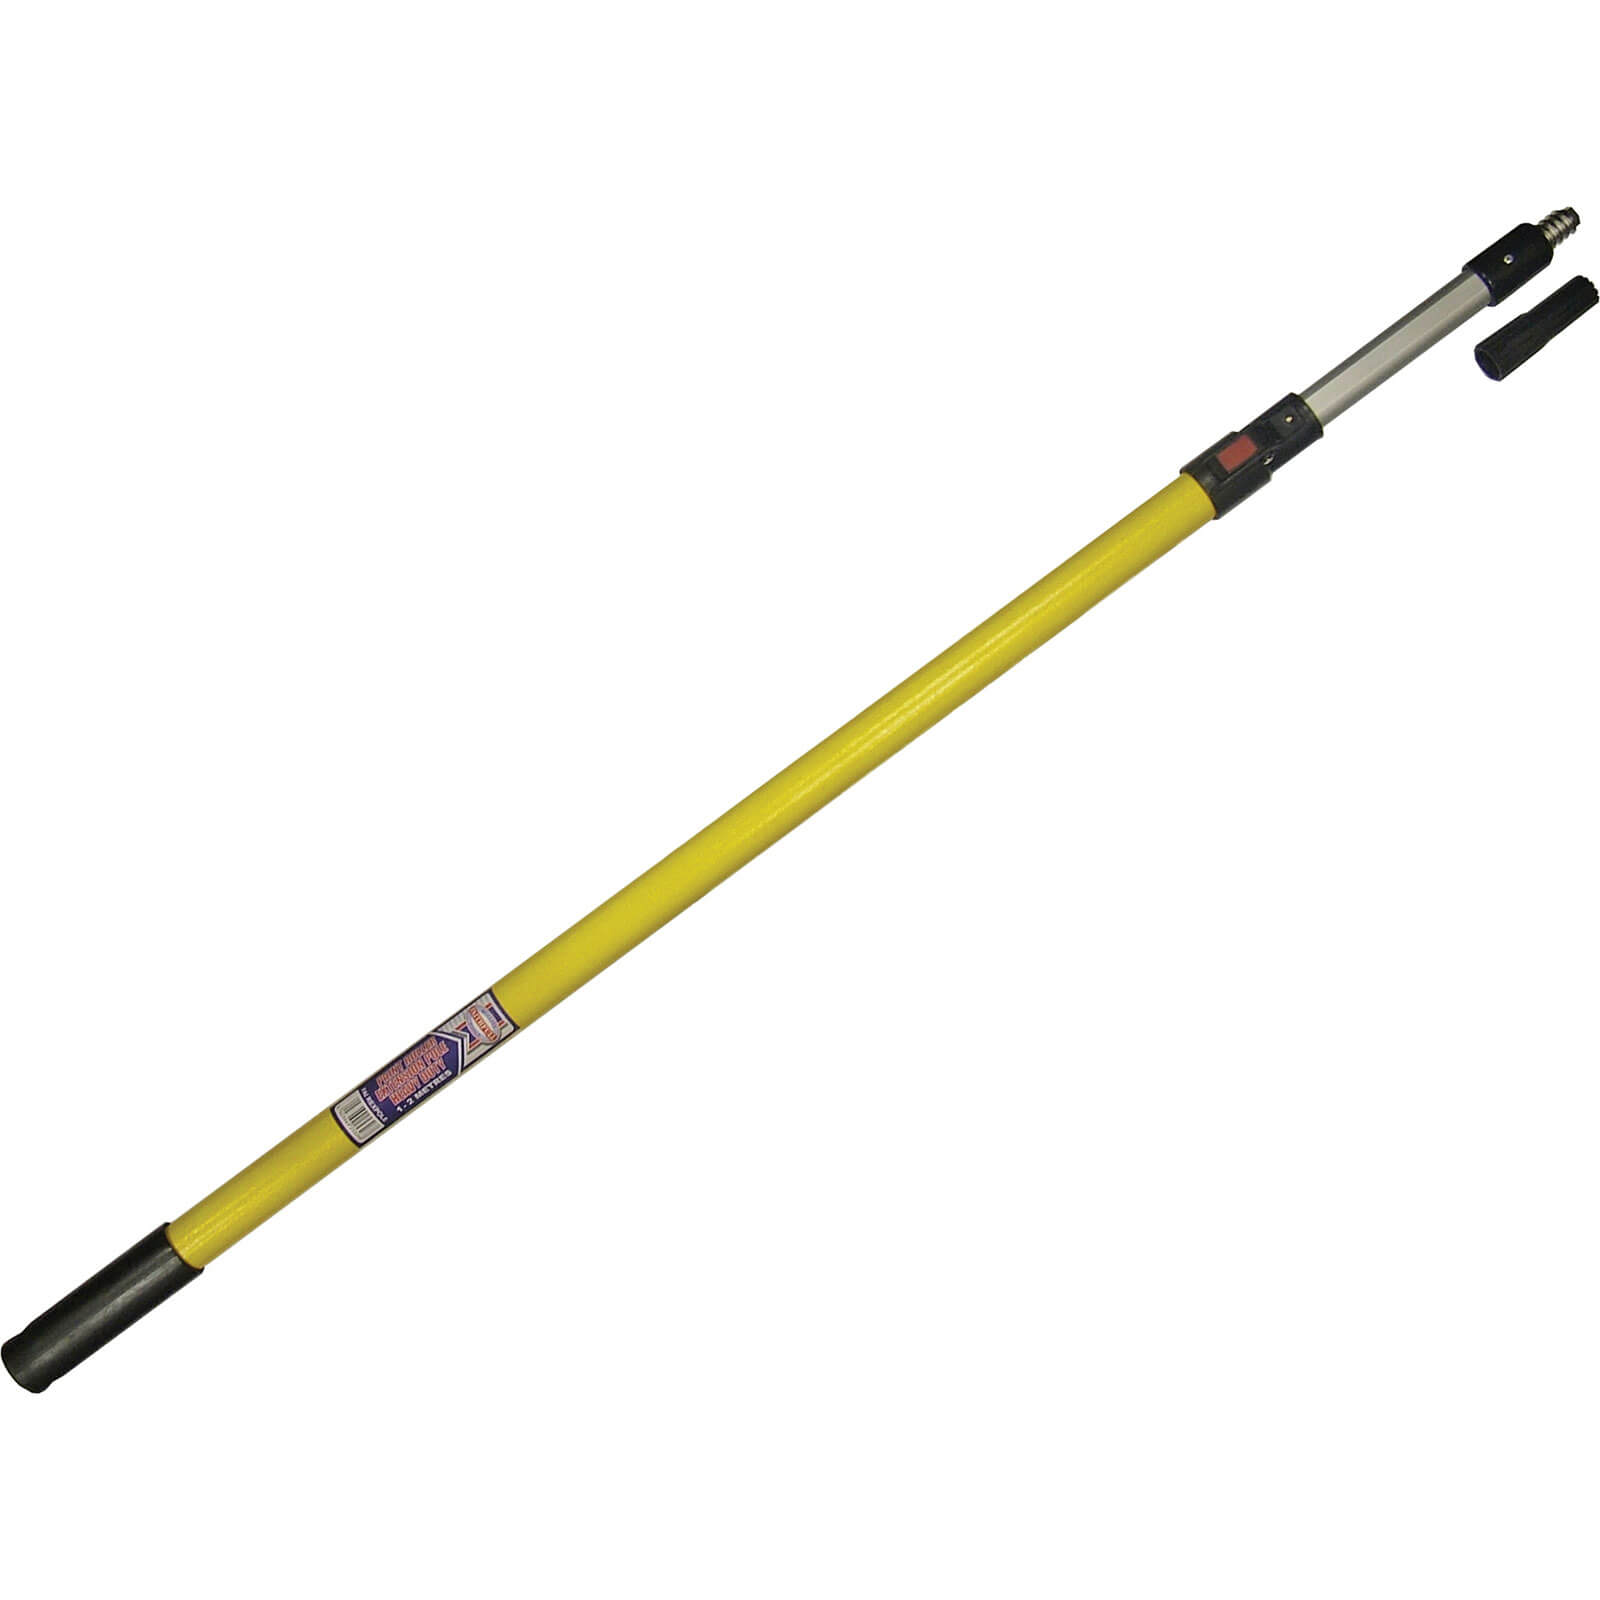 Faithfull Professional Paint Roller Extension Pole 160cm - 300cm